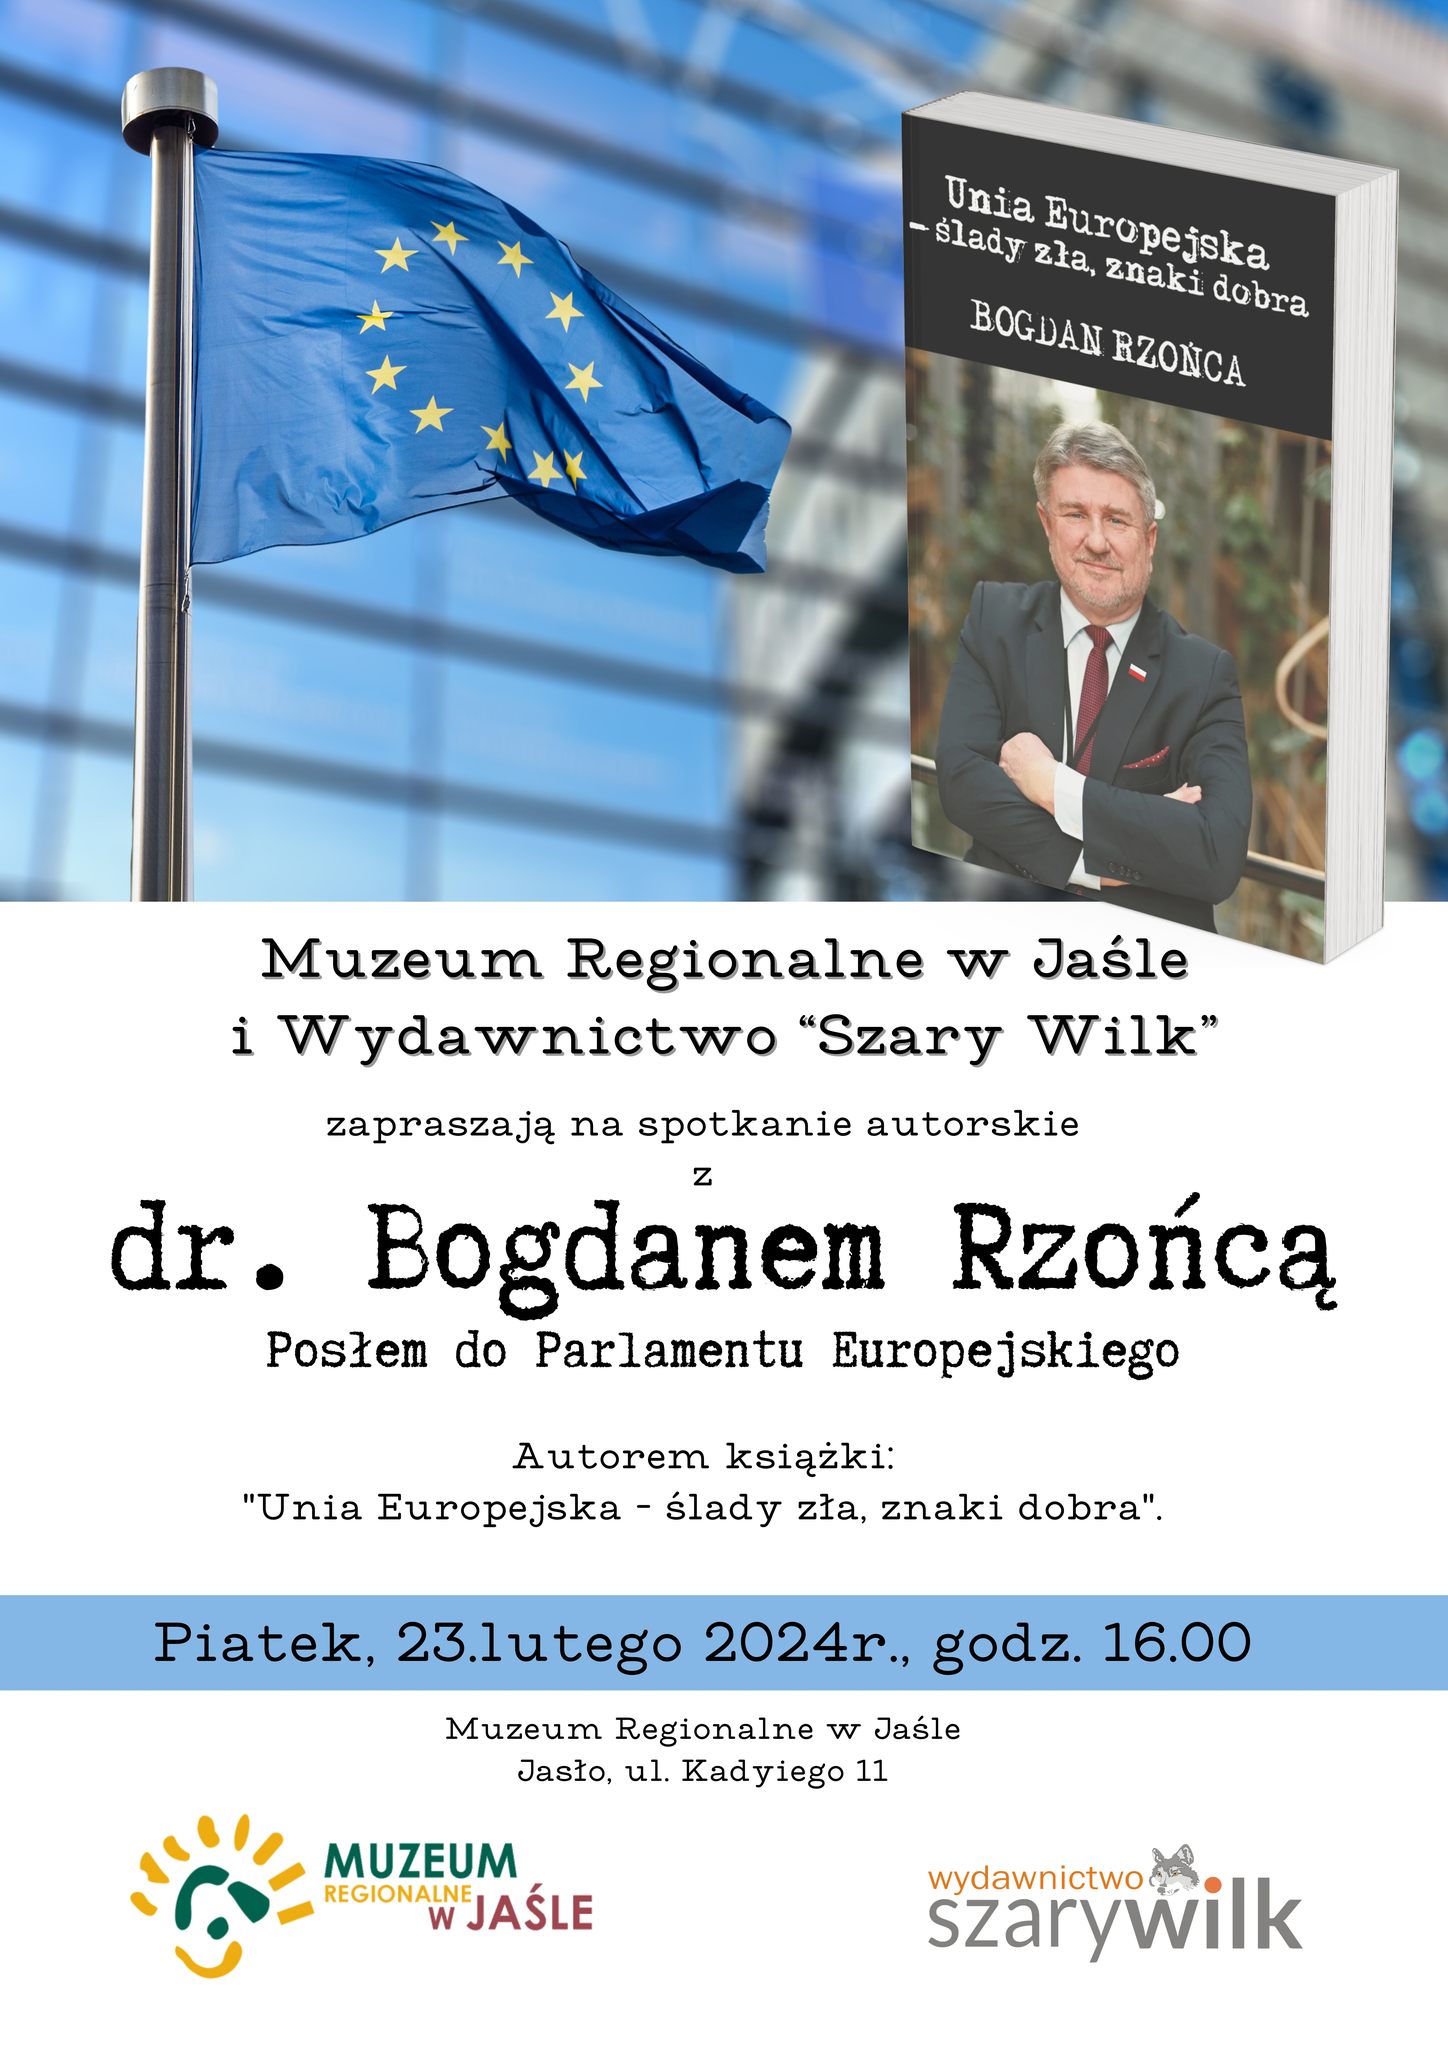  Spotkanie Autorskie z dr. Bogdanem Rzońcą - Posłem do PE, autorem książki 